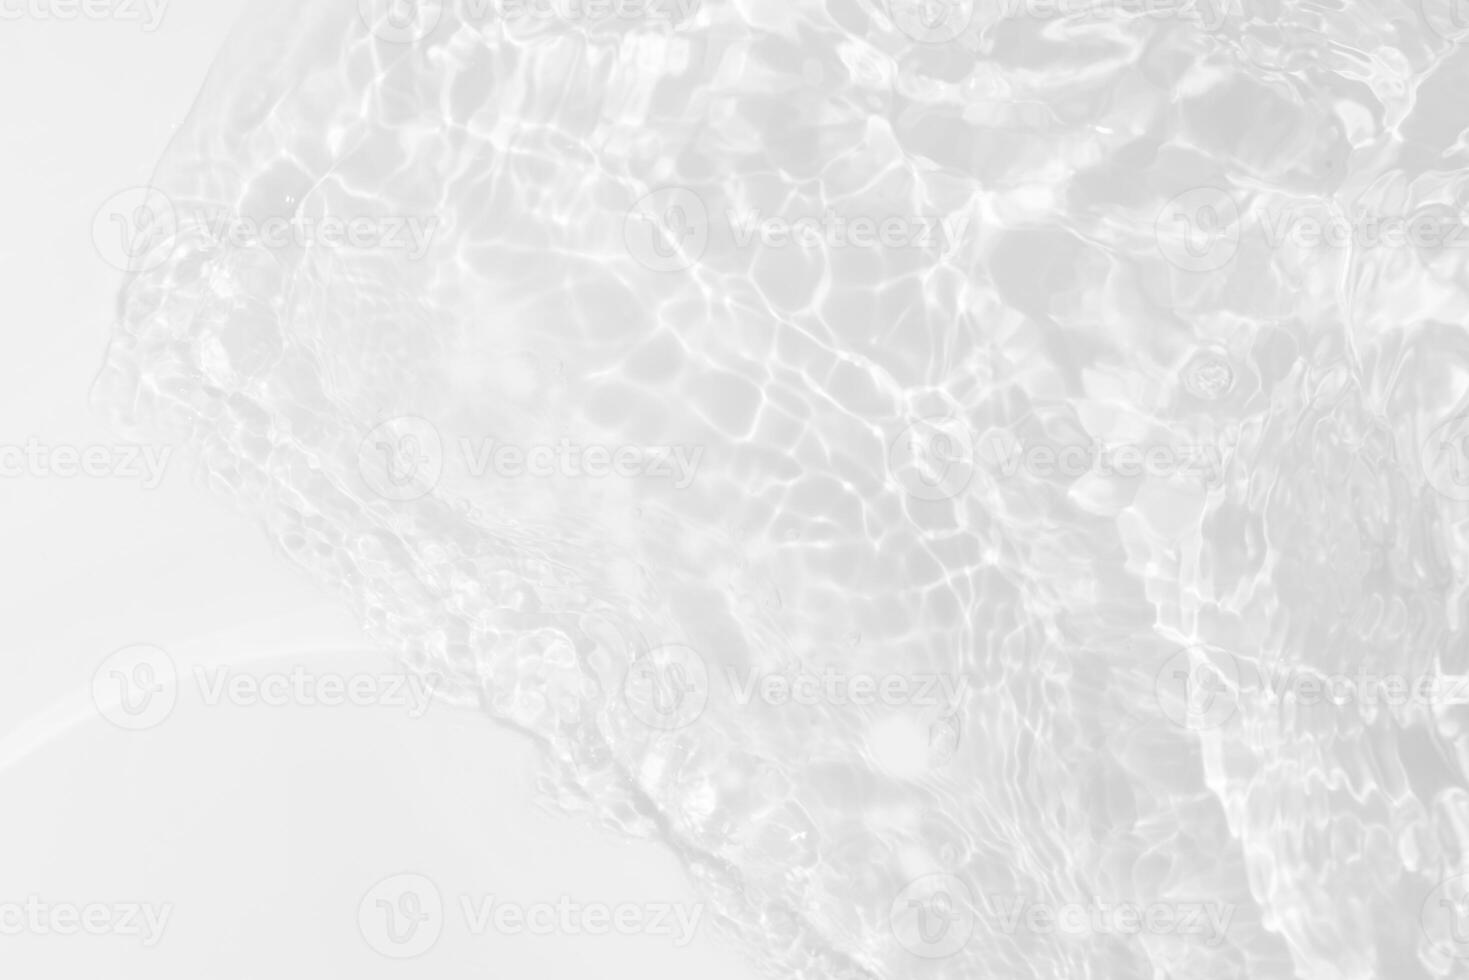 l'eau bleue vagues sur le surface ondulations flou. défocalisation flou transparent bleu coloré clair calme l'eau surface texture avec éclaboussure et bulles. l'eau vagues avec brillant modèle texture Contexte. photo